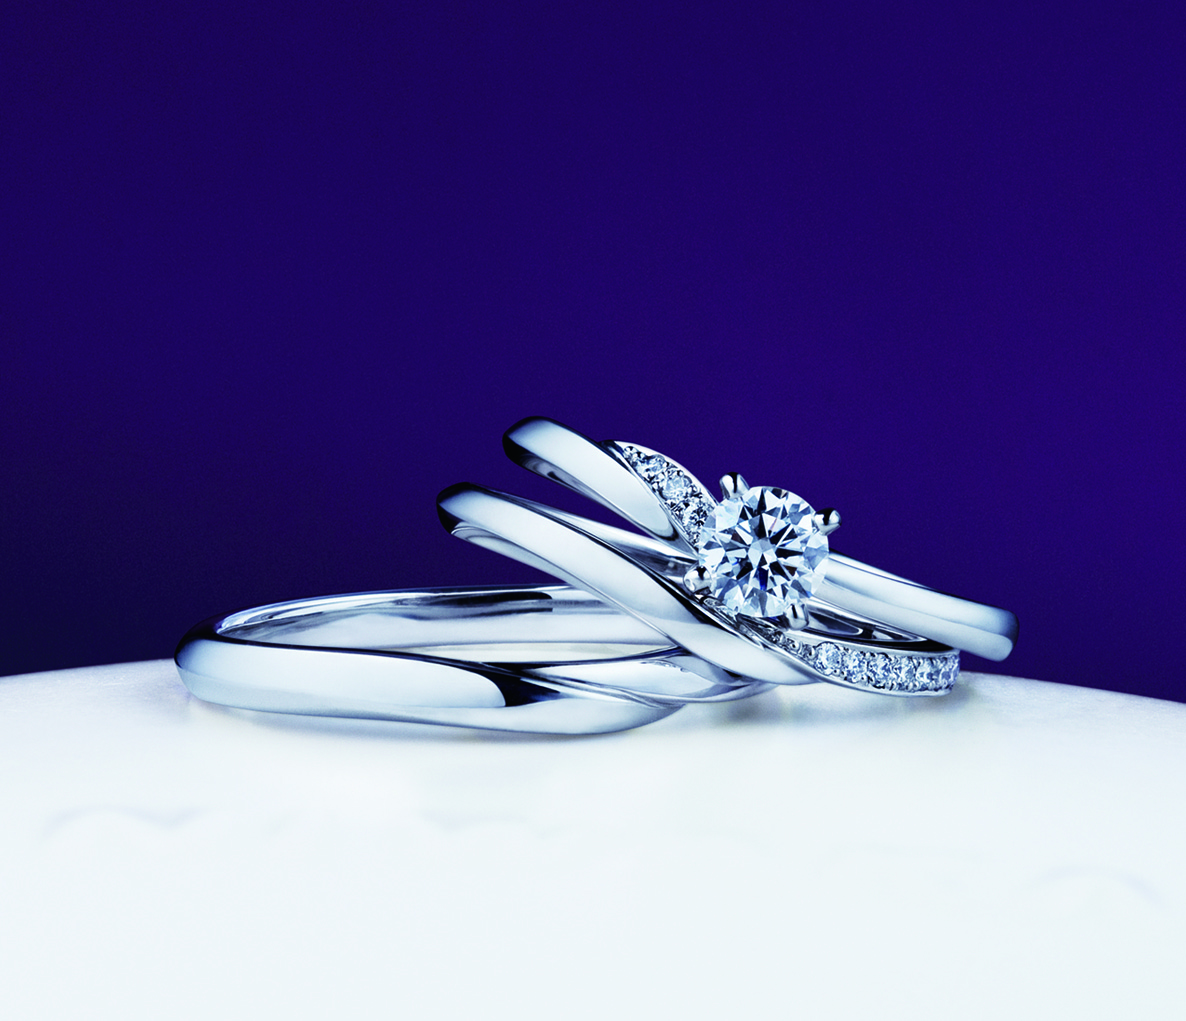 俄の婚約指輪と結婚指輪